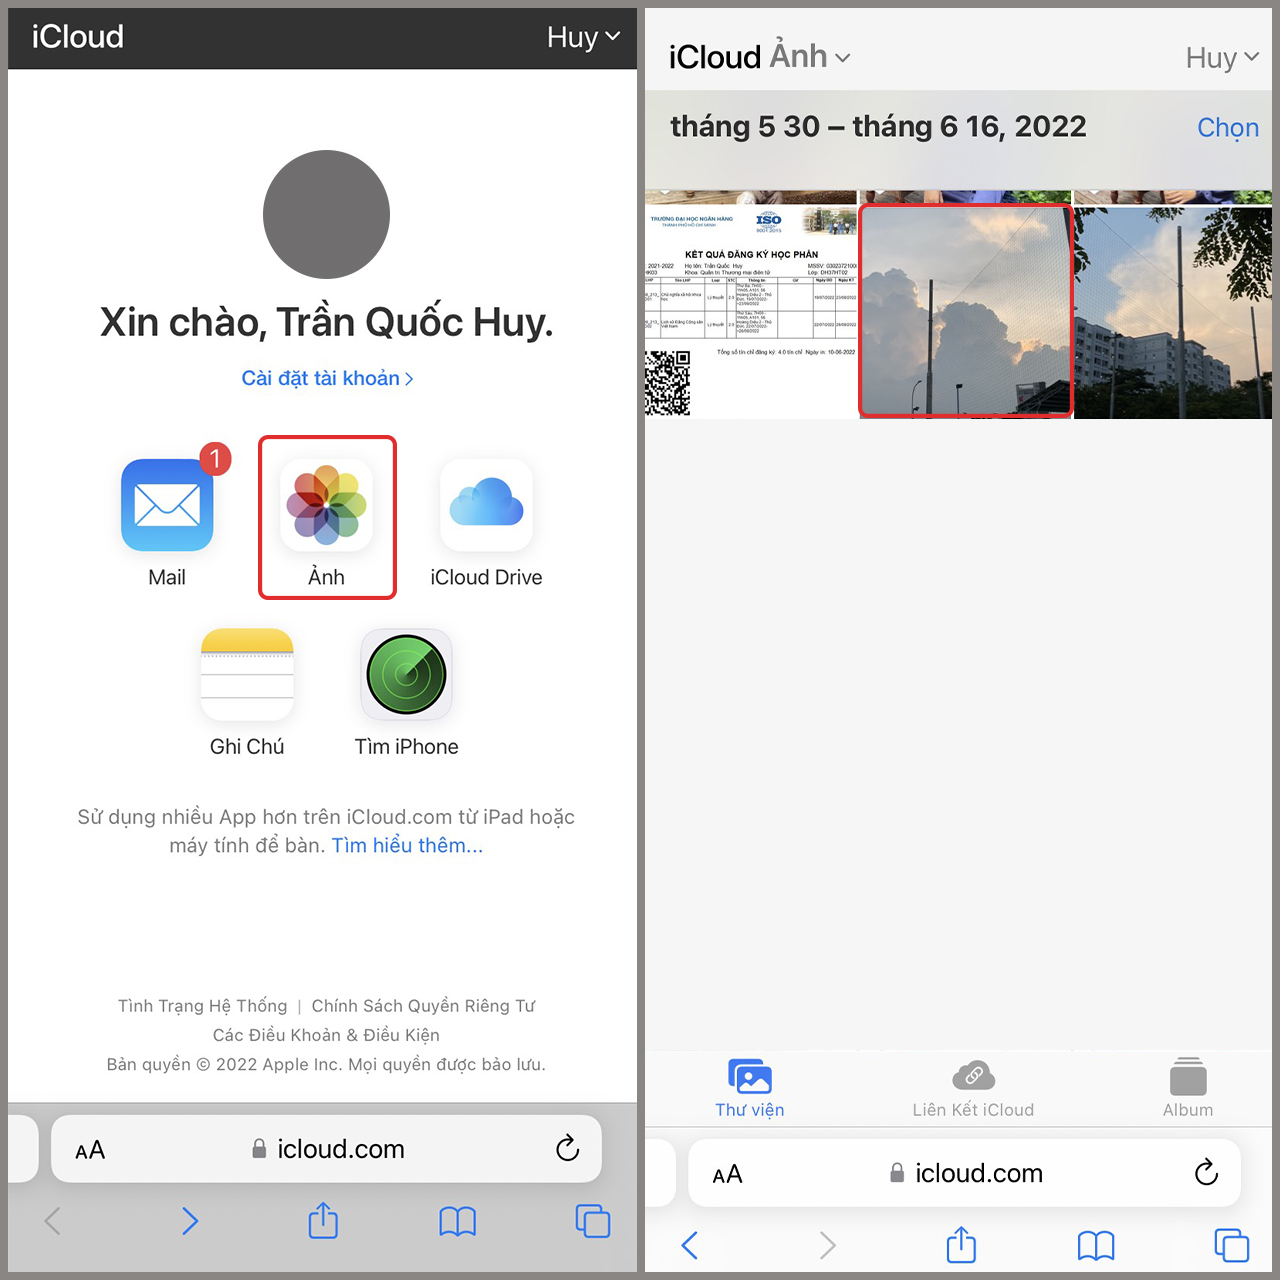 Cùng khám phá cách tải ảnh iCloud về iPhone 13 Pro Max với bảo mật tối đa, giúp bạn bảo vệ thông tin cá nhân tuyệt đối. Cách thức đơn giản và nhanh chóng chỉ có trên hình ảnh liên quan.